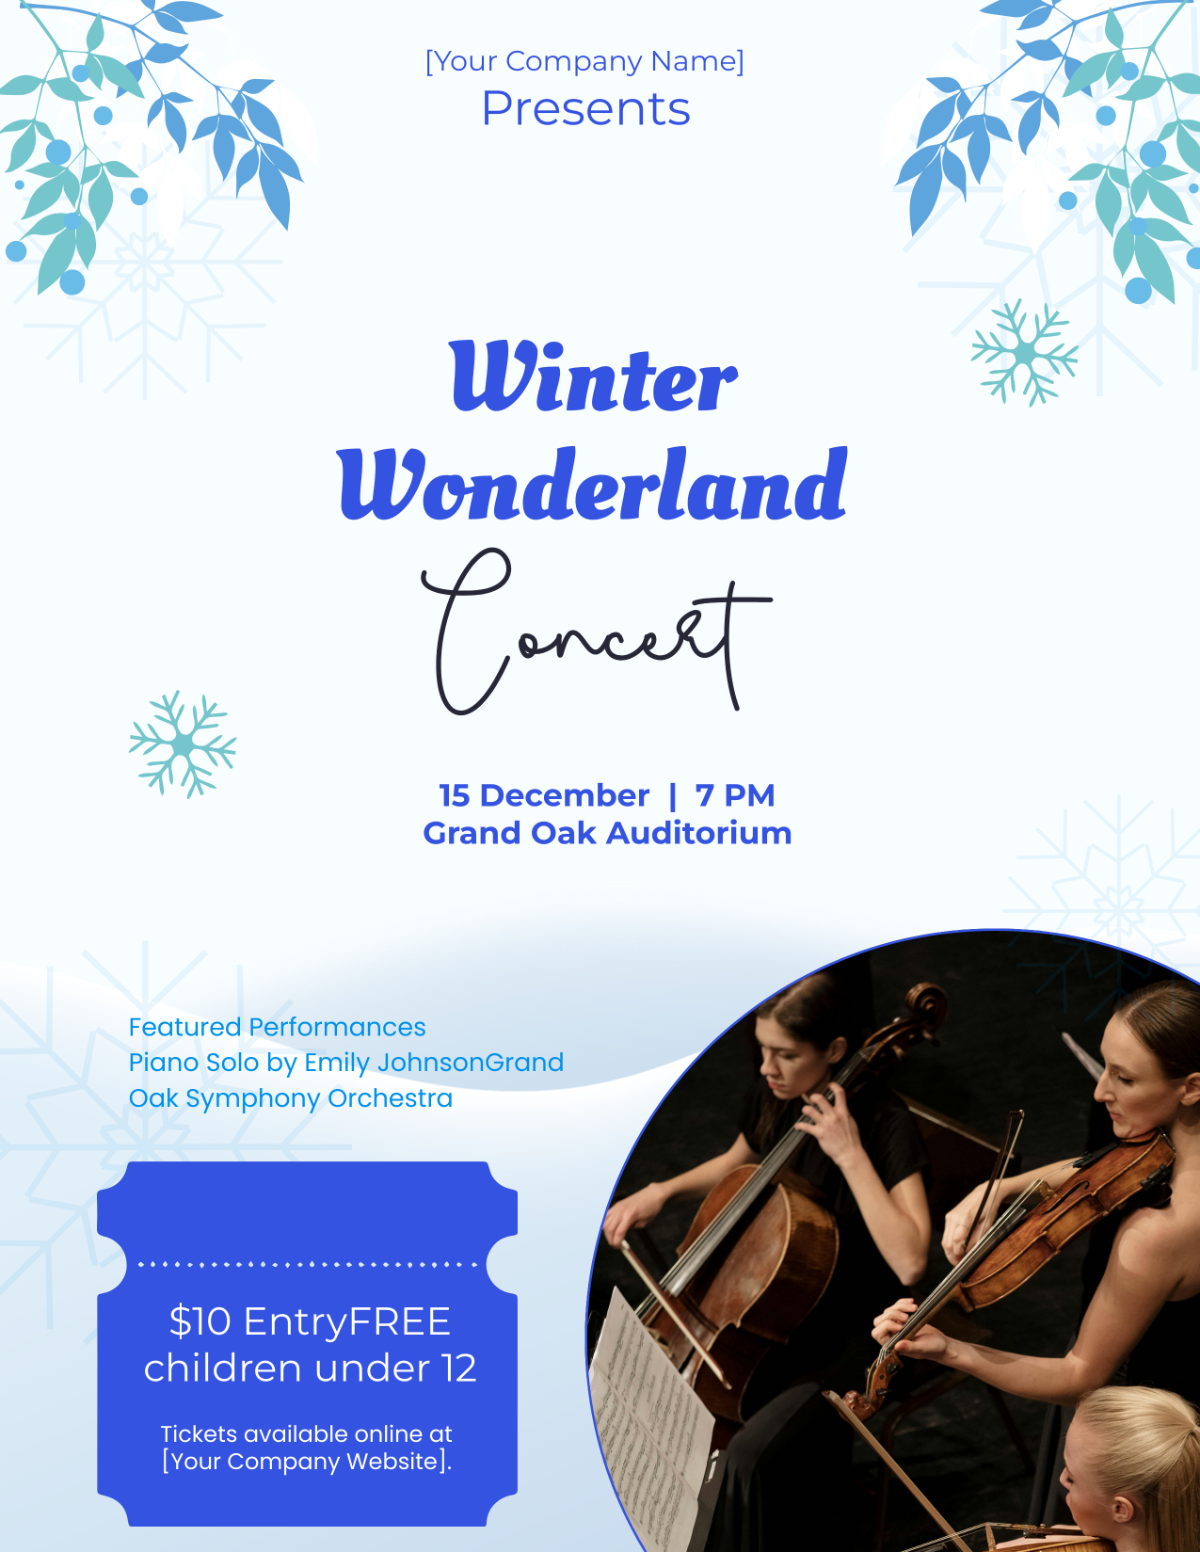 Winter Concert Flyer